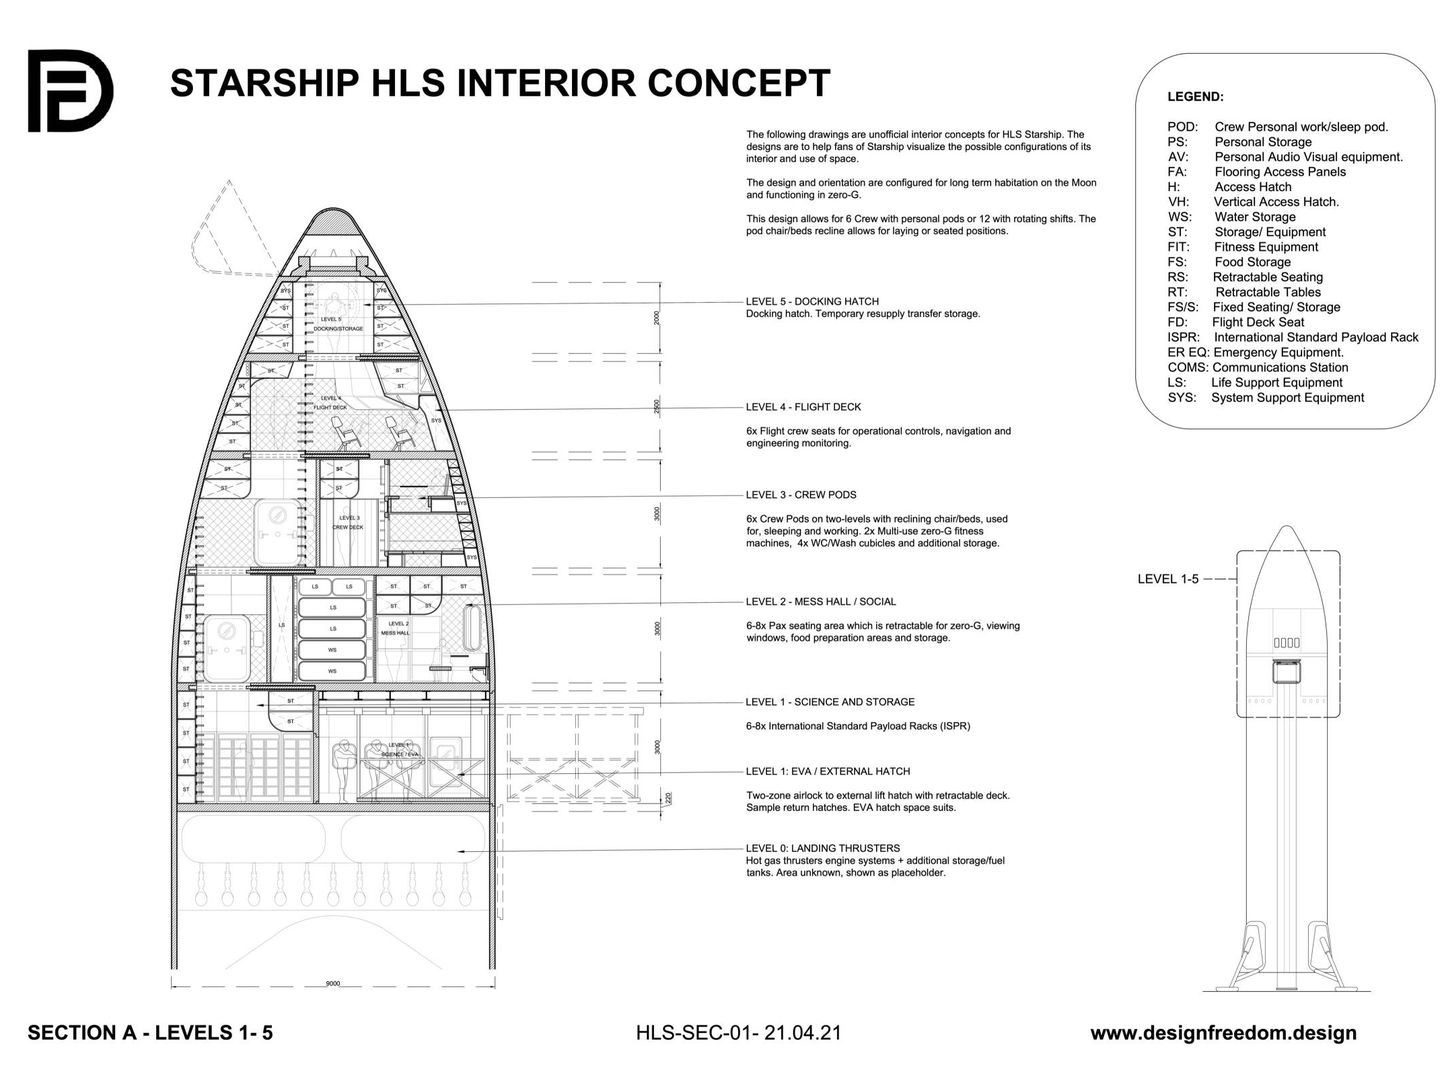 Una posible configuración interior del Starship HLS (DF)